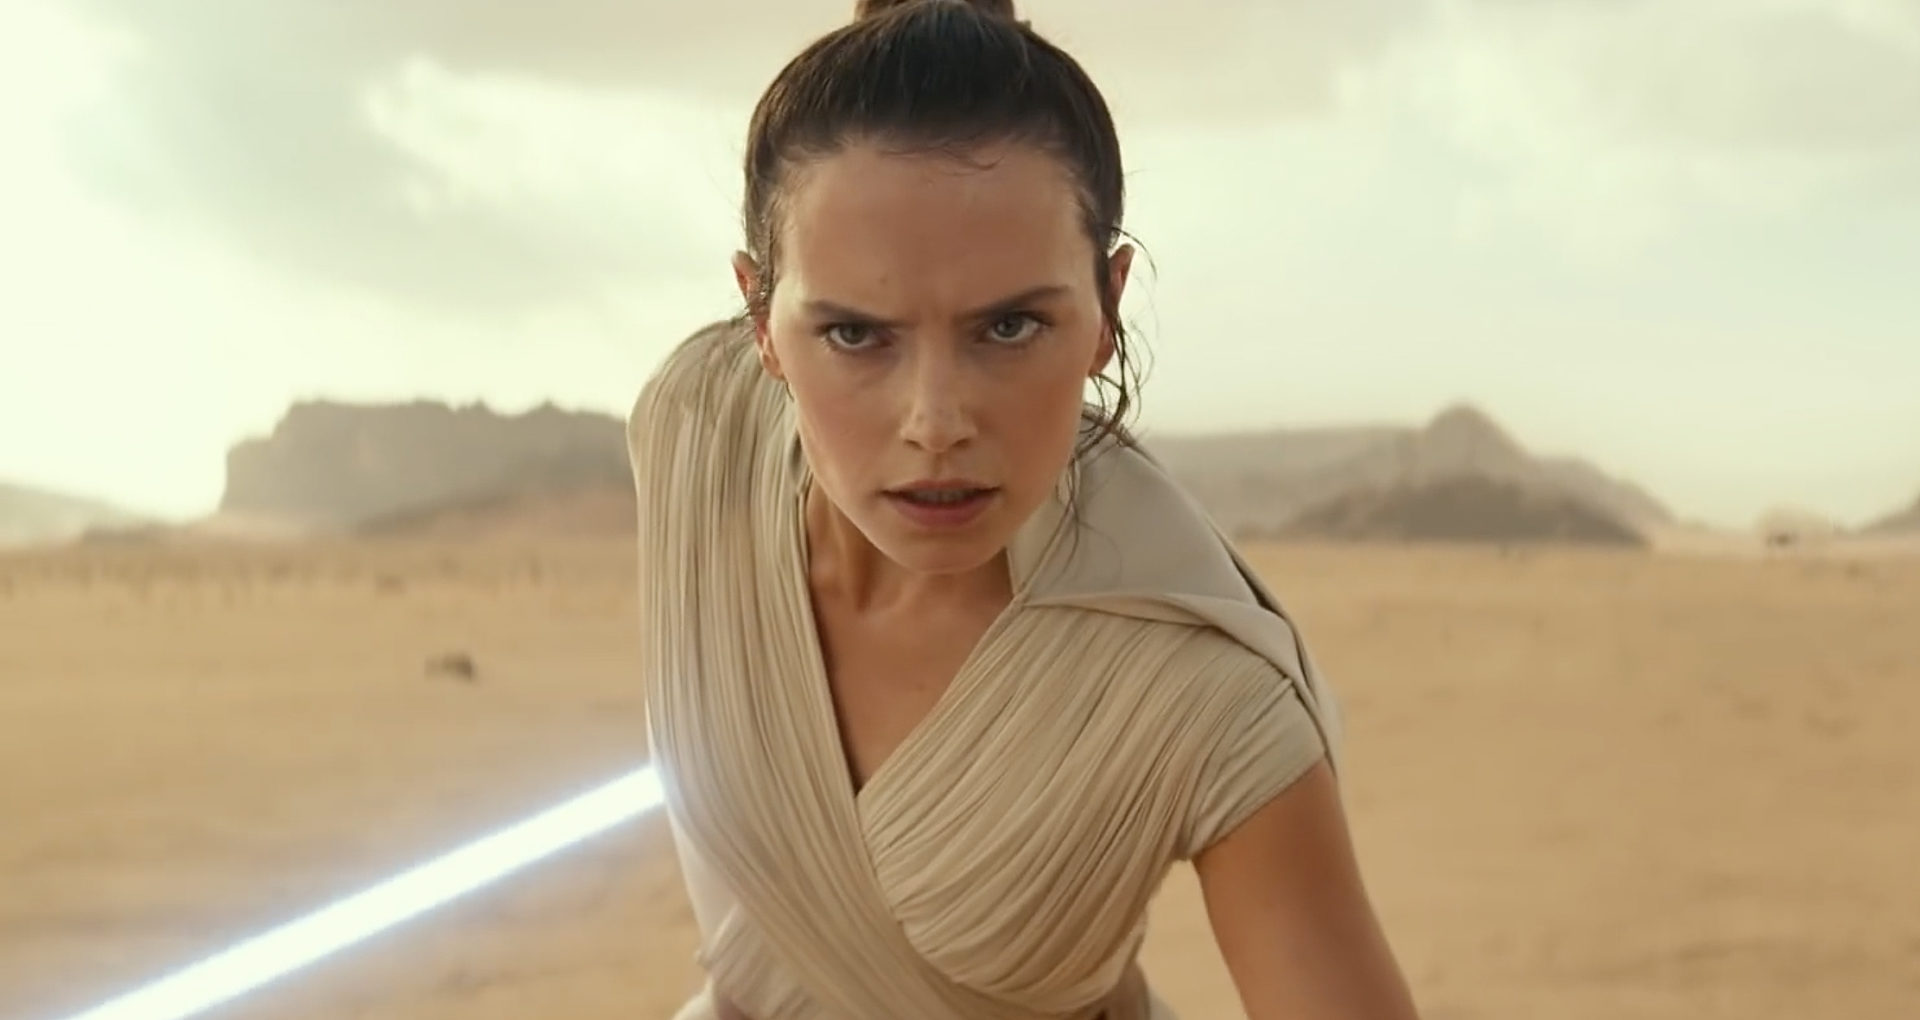 Star Wars: Rise of Skywalker é um remendo para o filme anterior